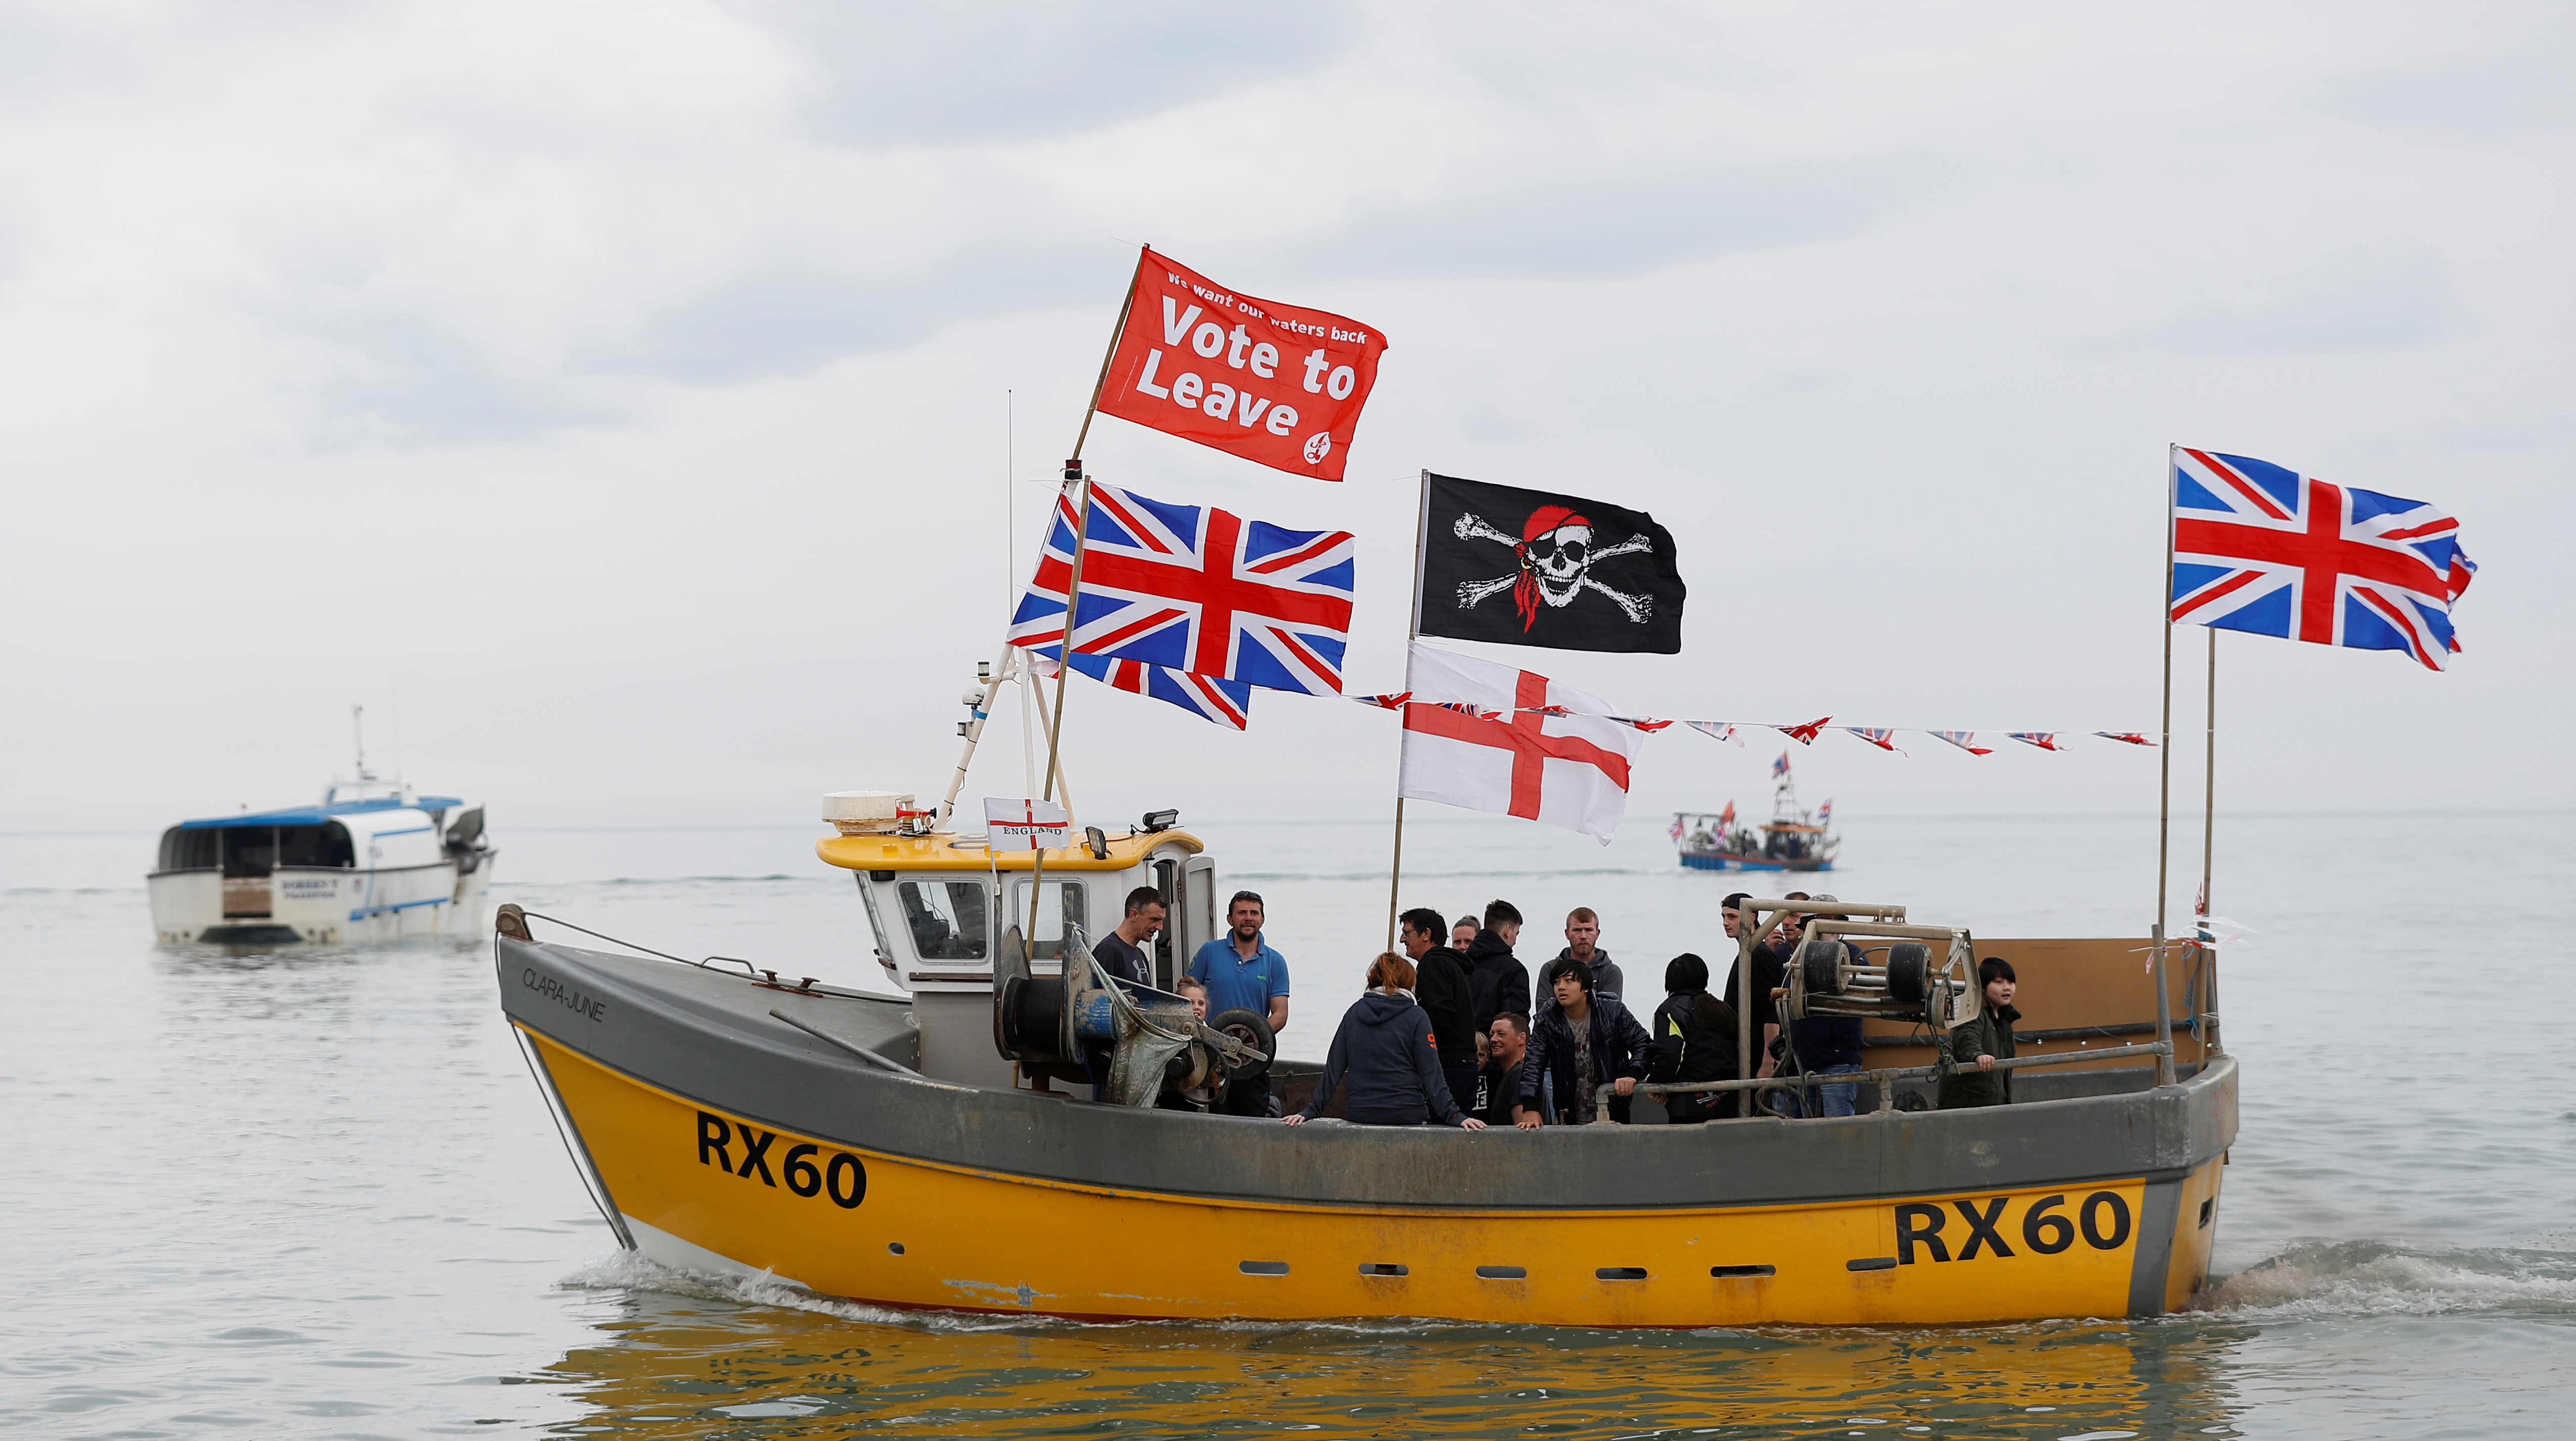 أعلام بريطانيا فوق قوارب الصيد